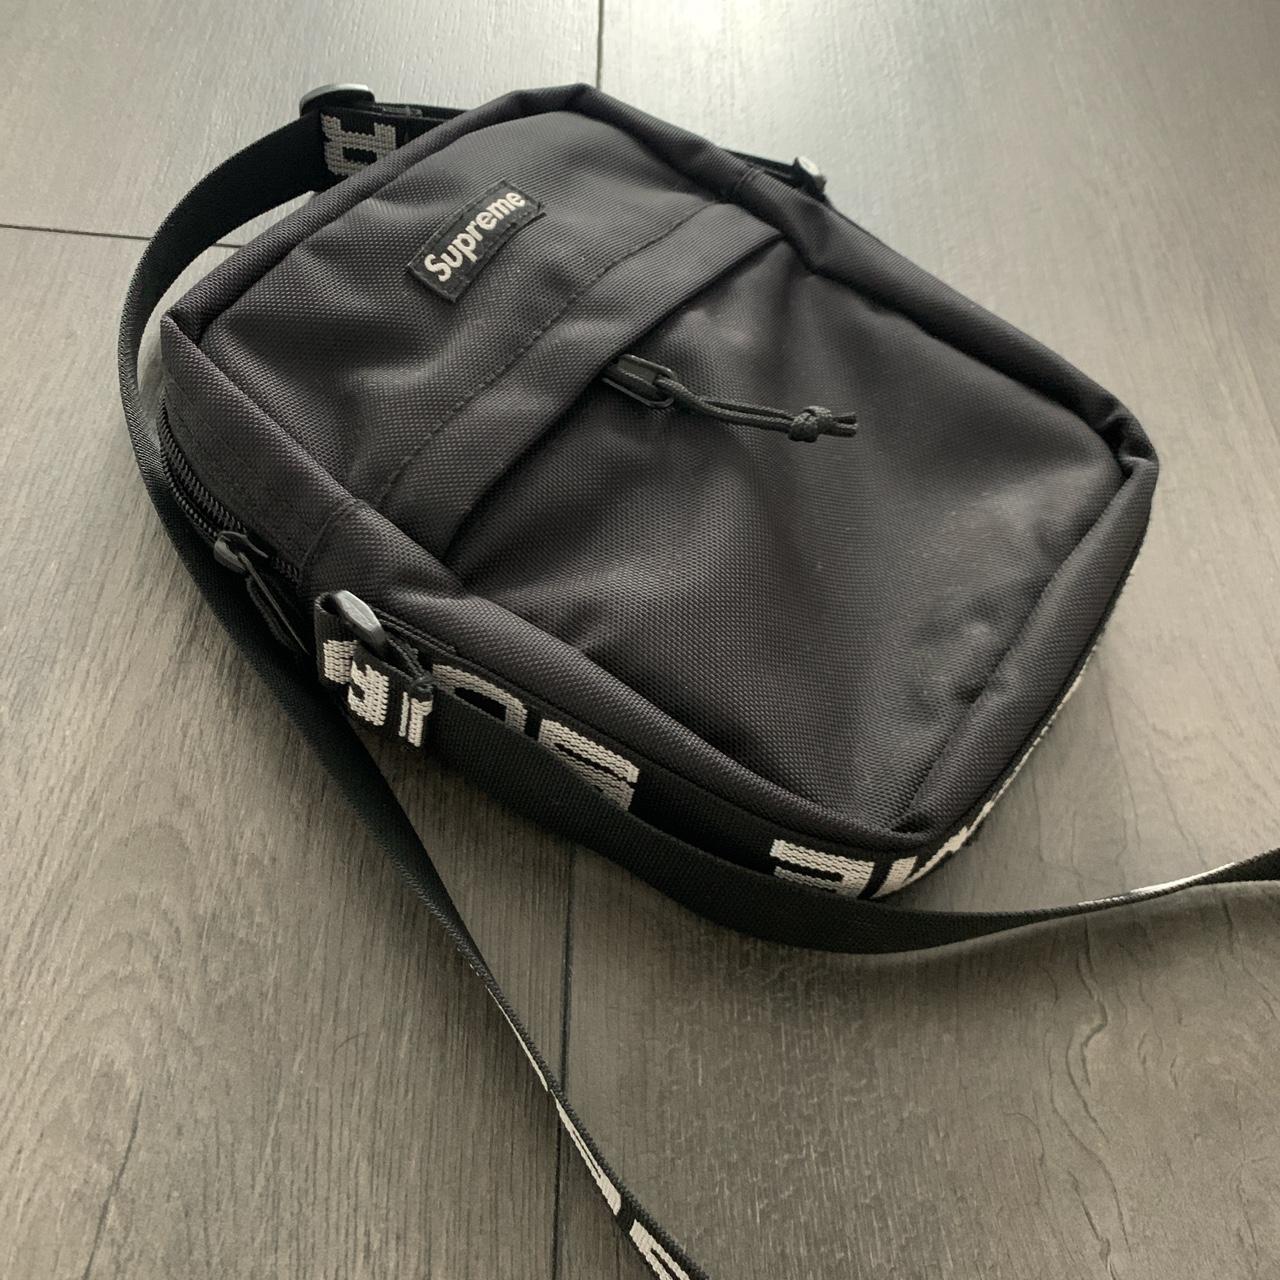 ✖️AUTHENTIC SUPREME SHOULDER BAG S18. BLACK AND - Depop